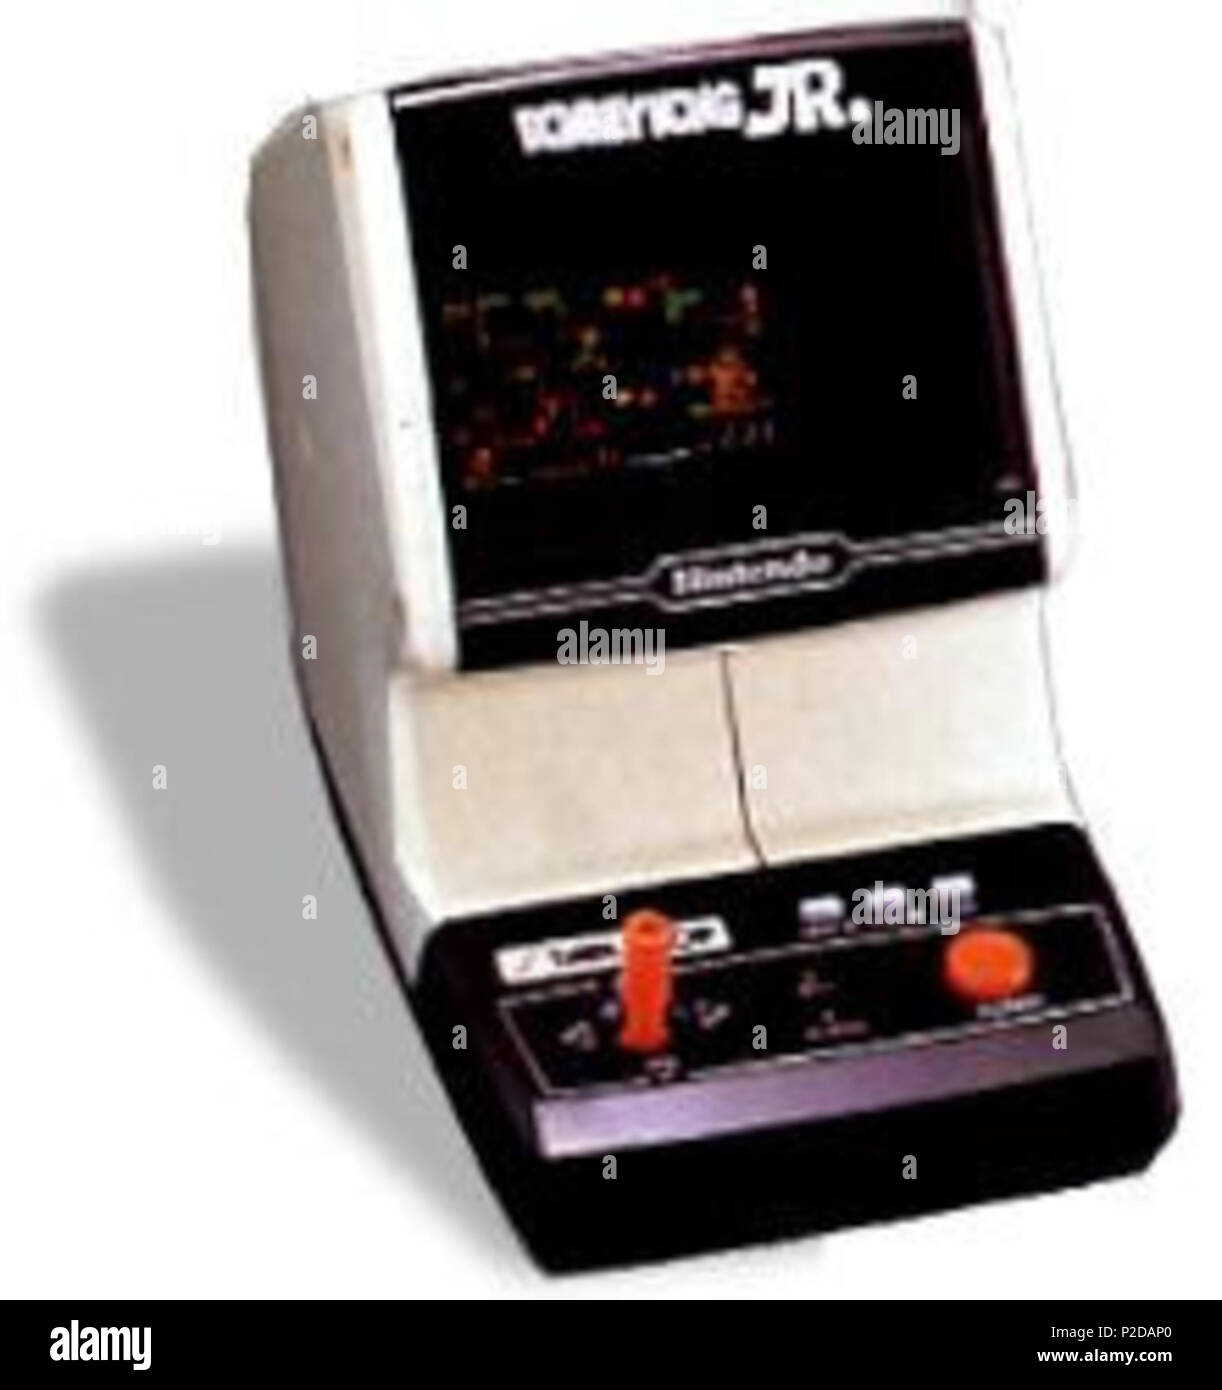 donkey kong handheld game 1980s